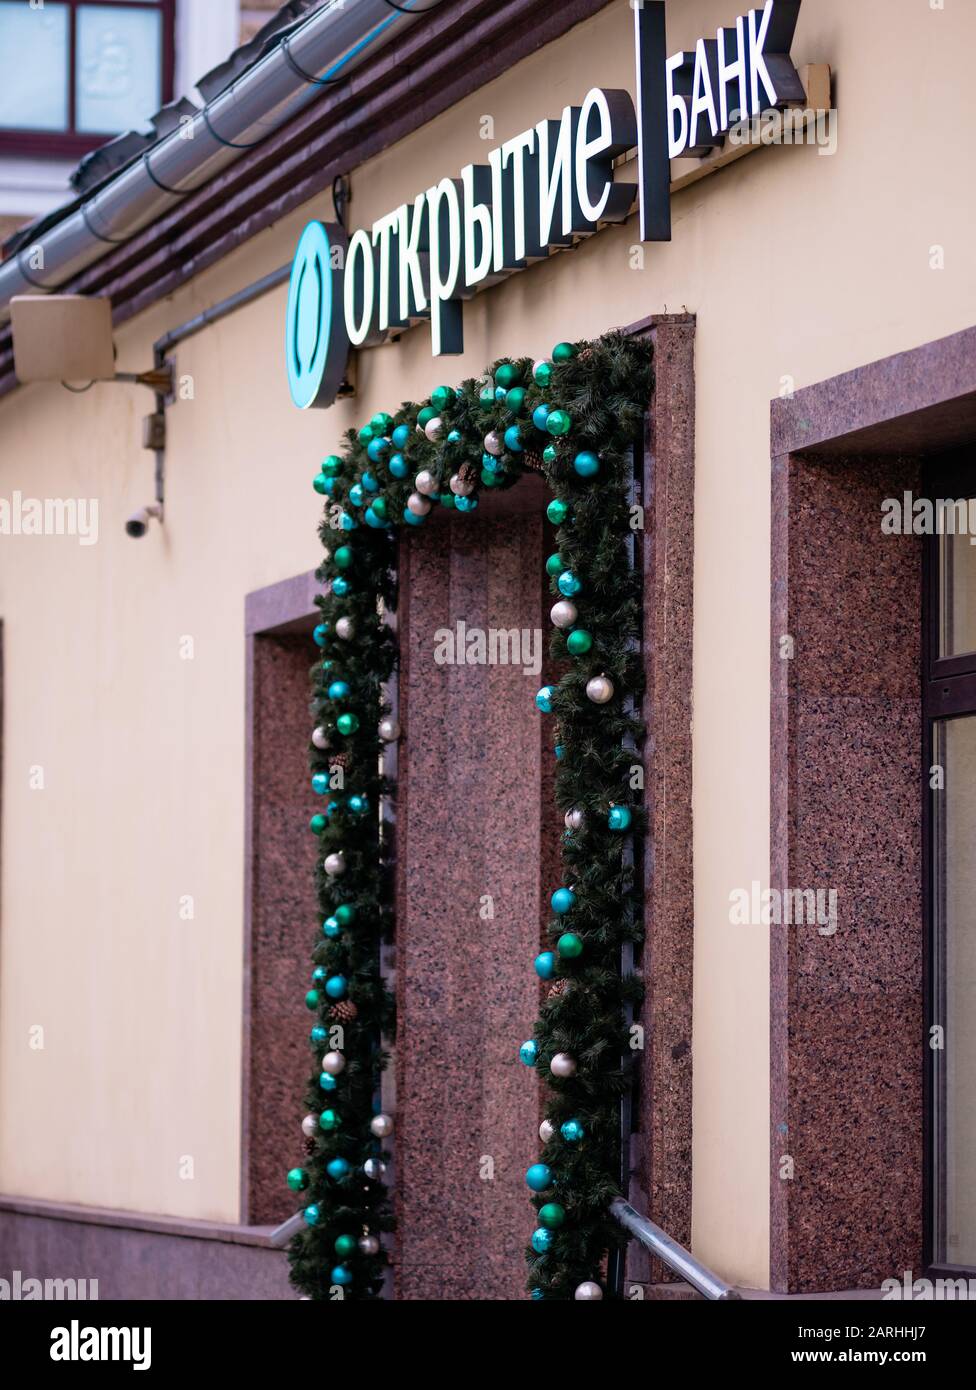 Mosca, Russia - 17 gennaio 2020: Otkritie Bank firma sopra l'ingresso. Garland di Natale di giocattoli di Natale e rami di abete intorno Foto Stock